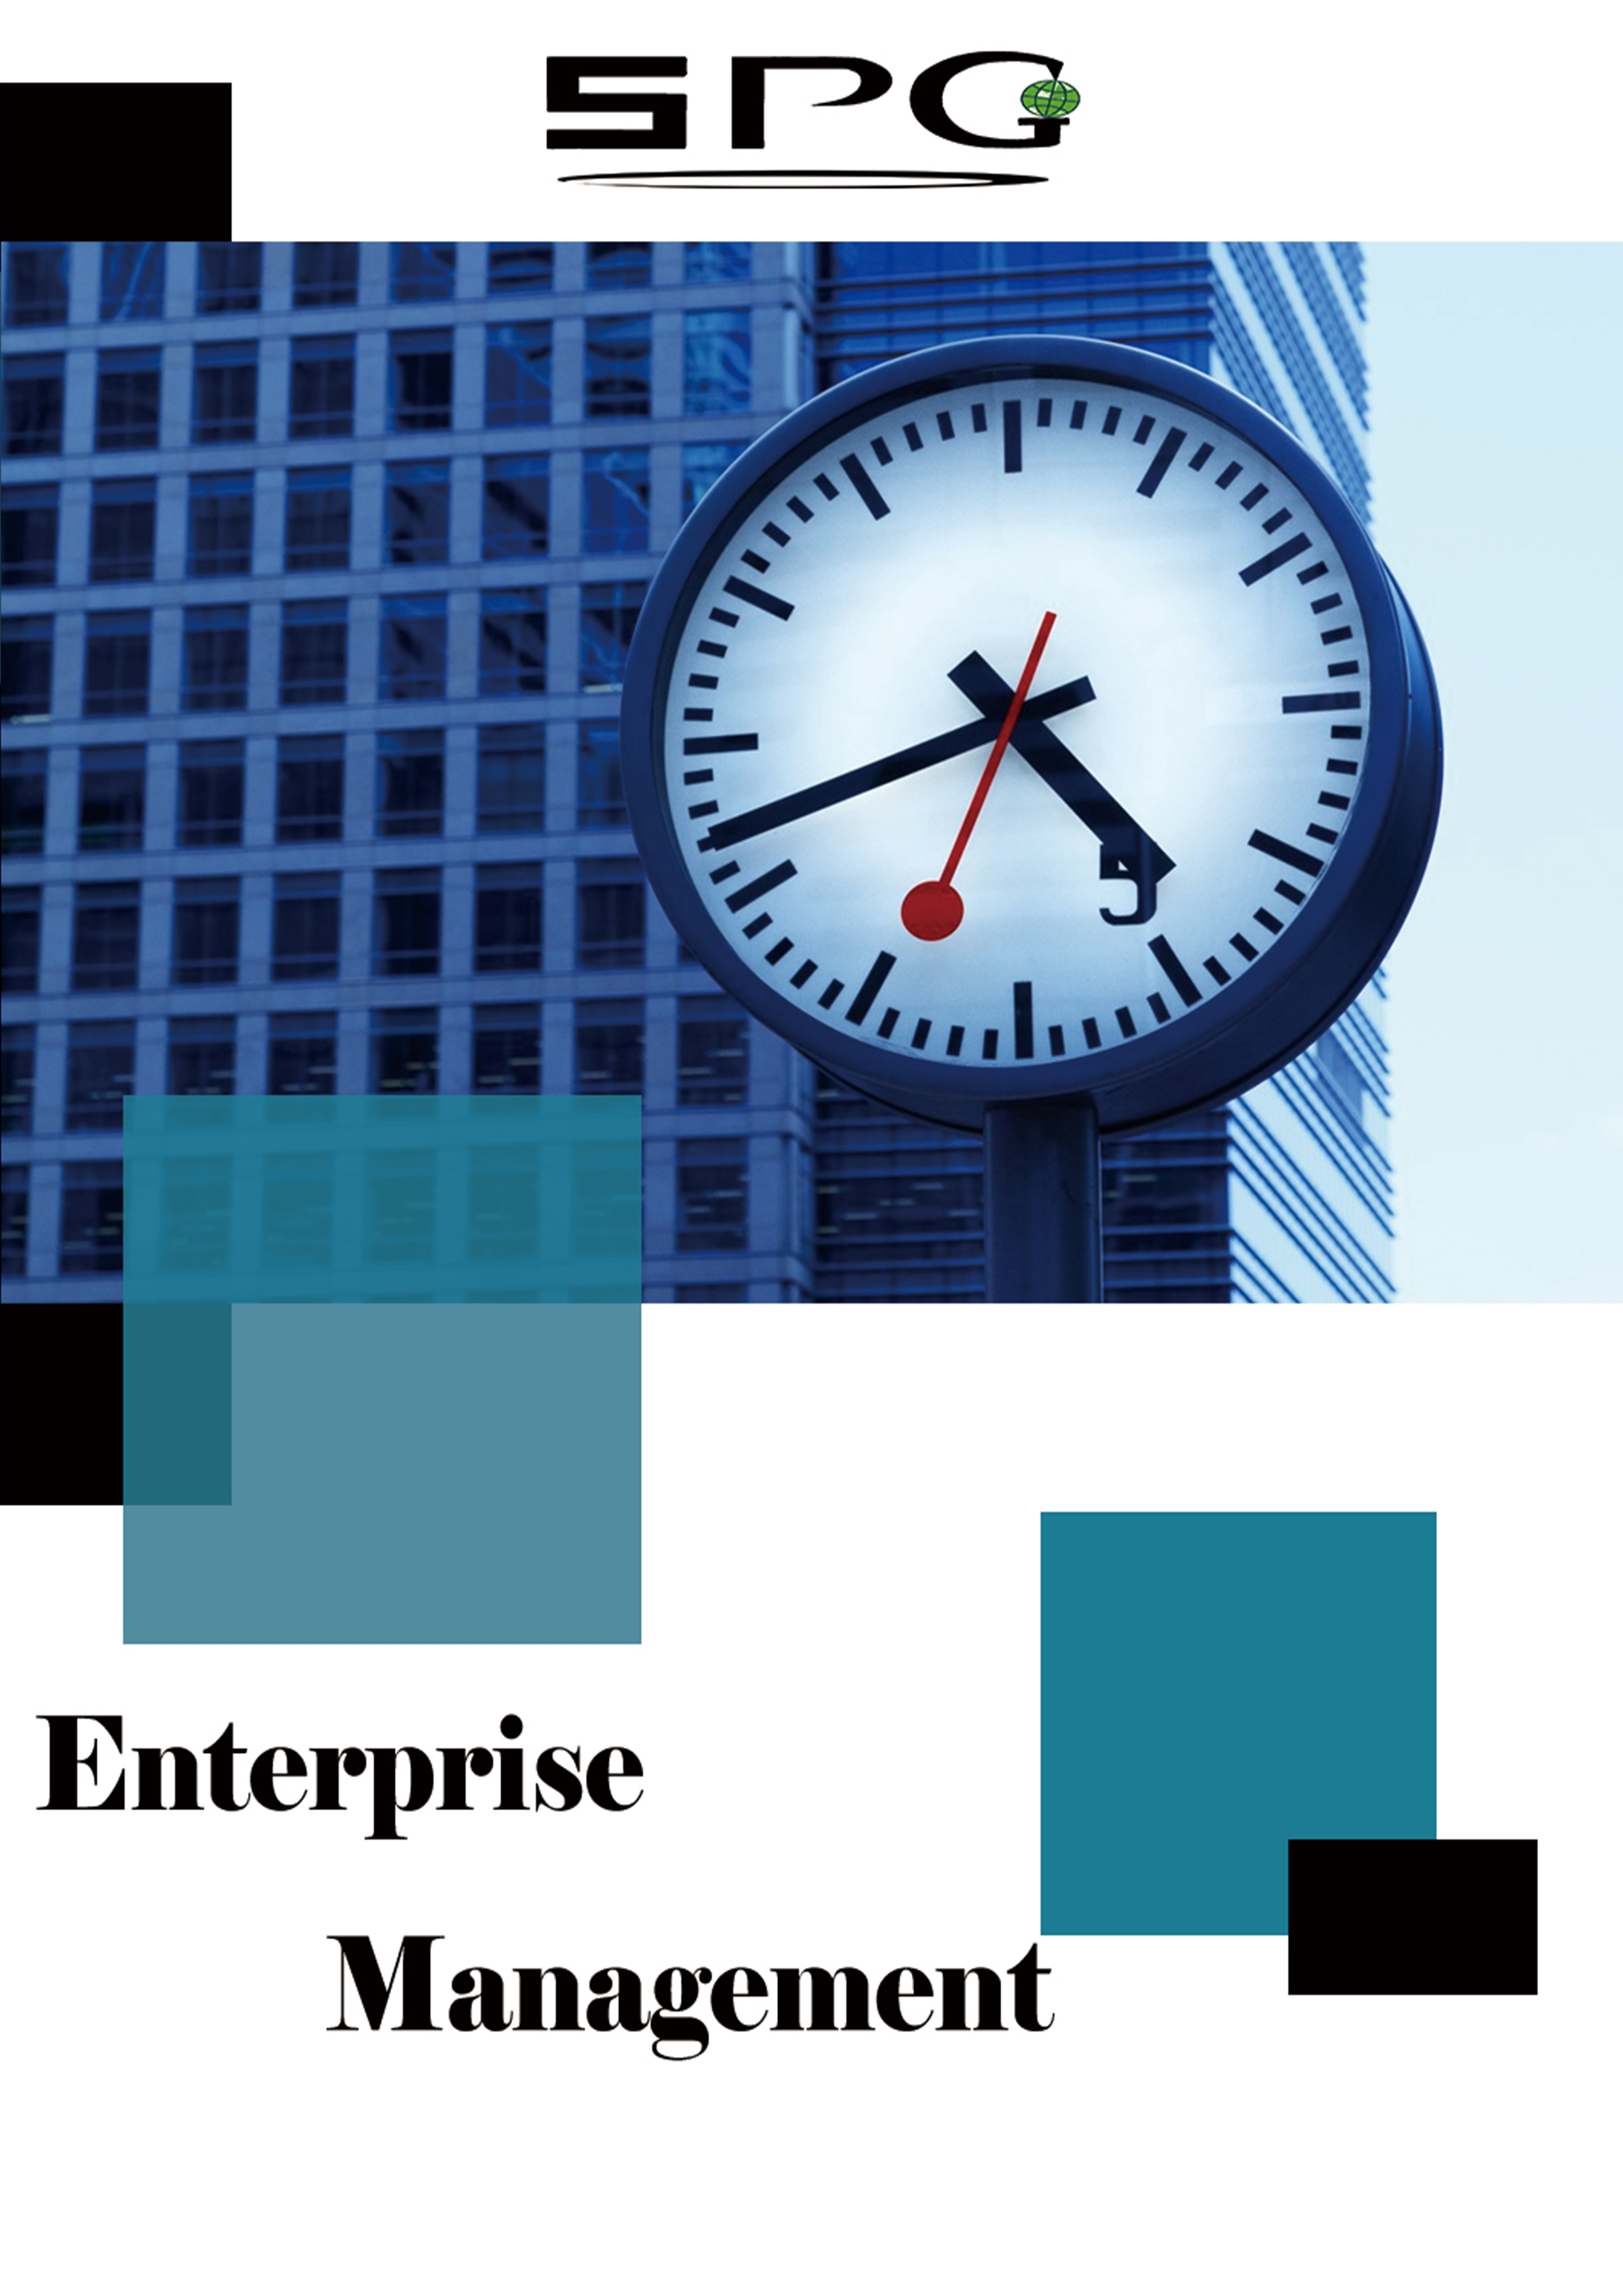 Enterprise Management | Scholar Publishing Group